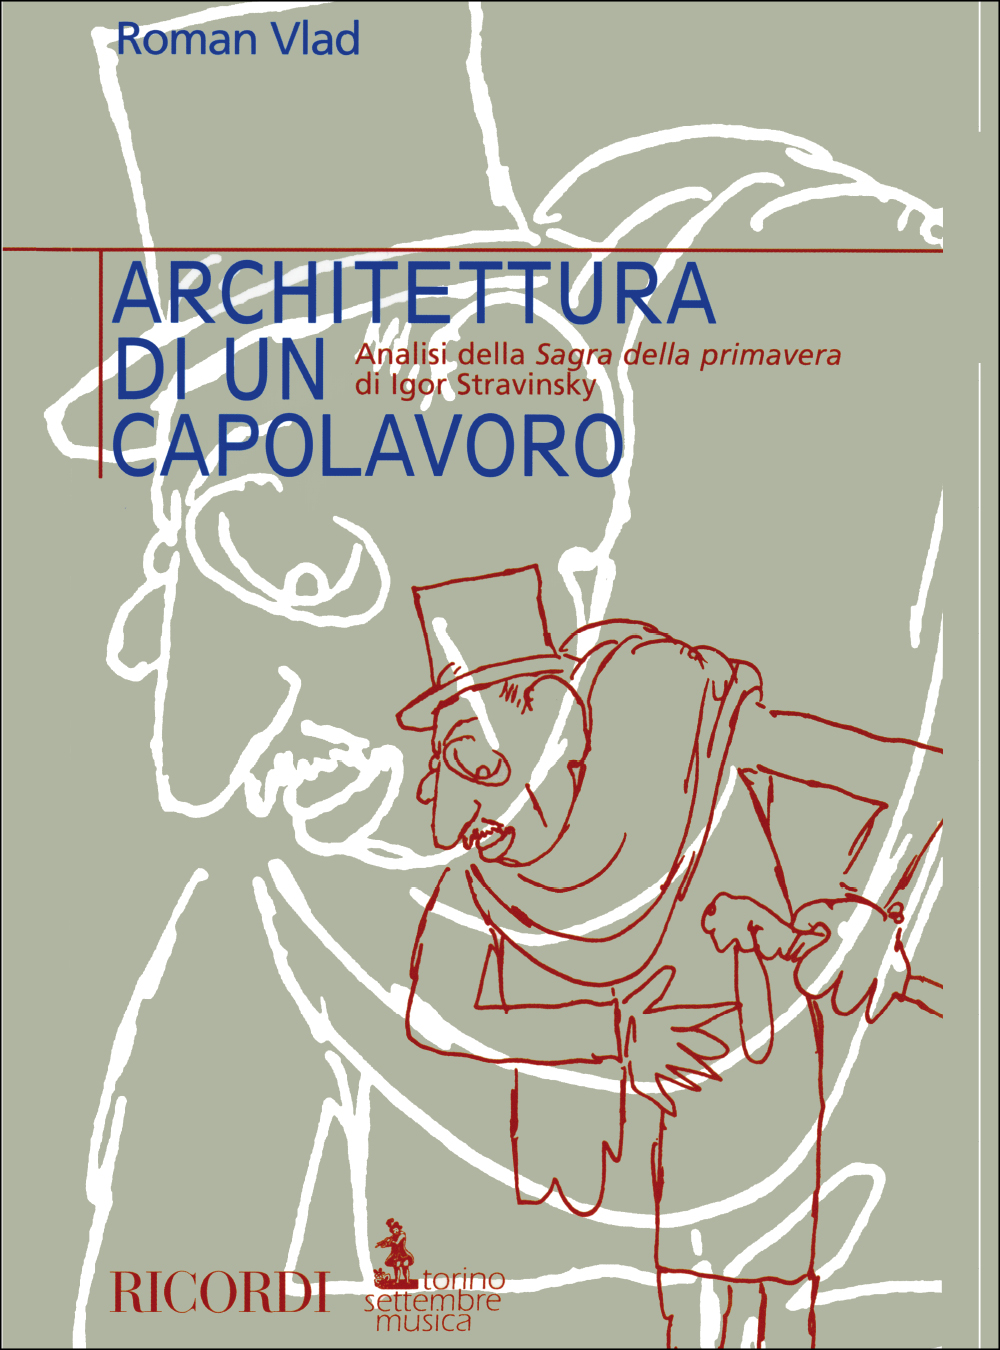 Roman Vlad: Architettura Di Un Capolavoro